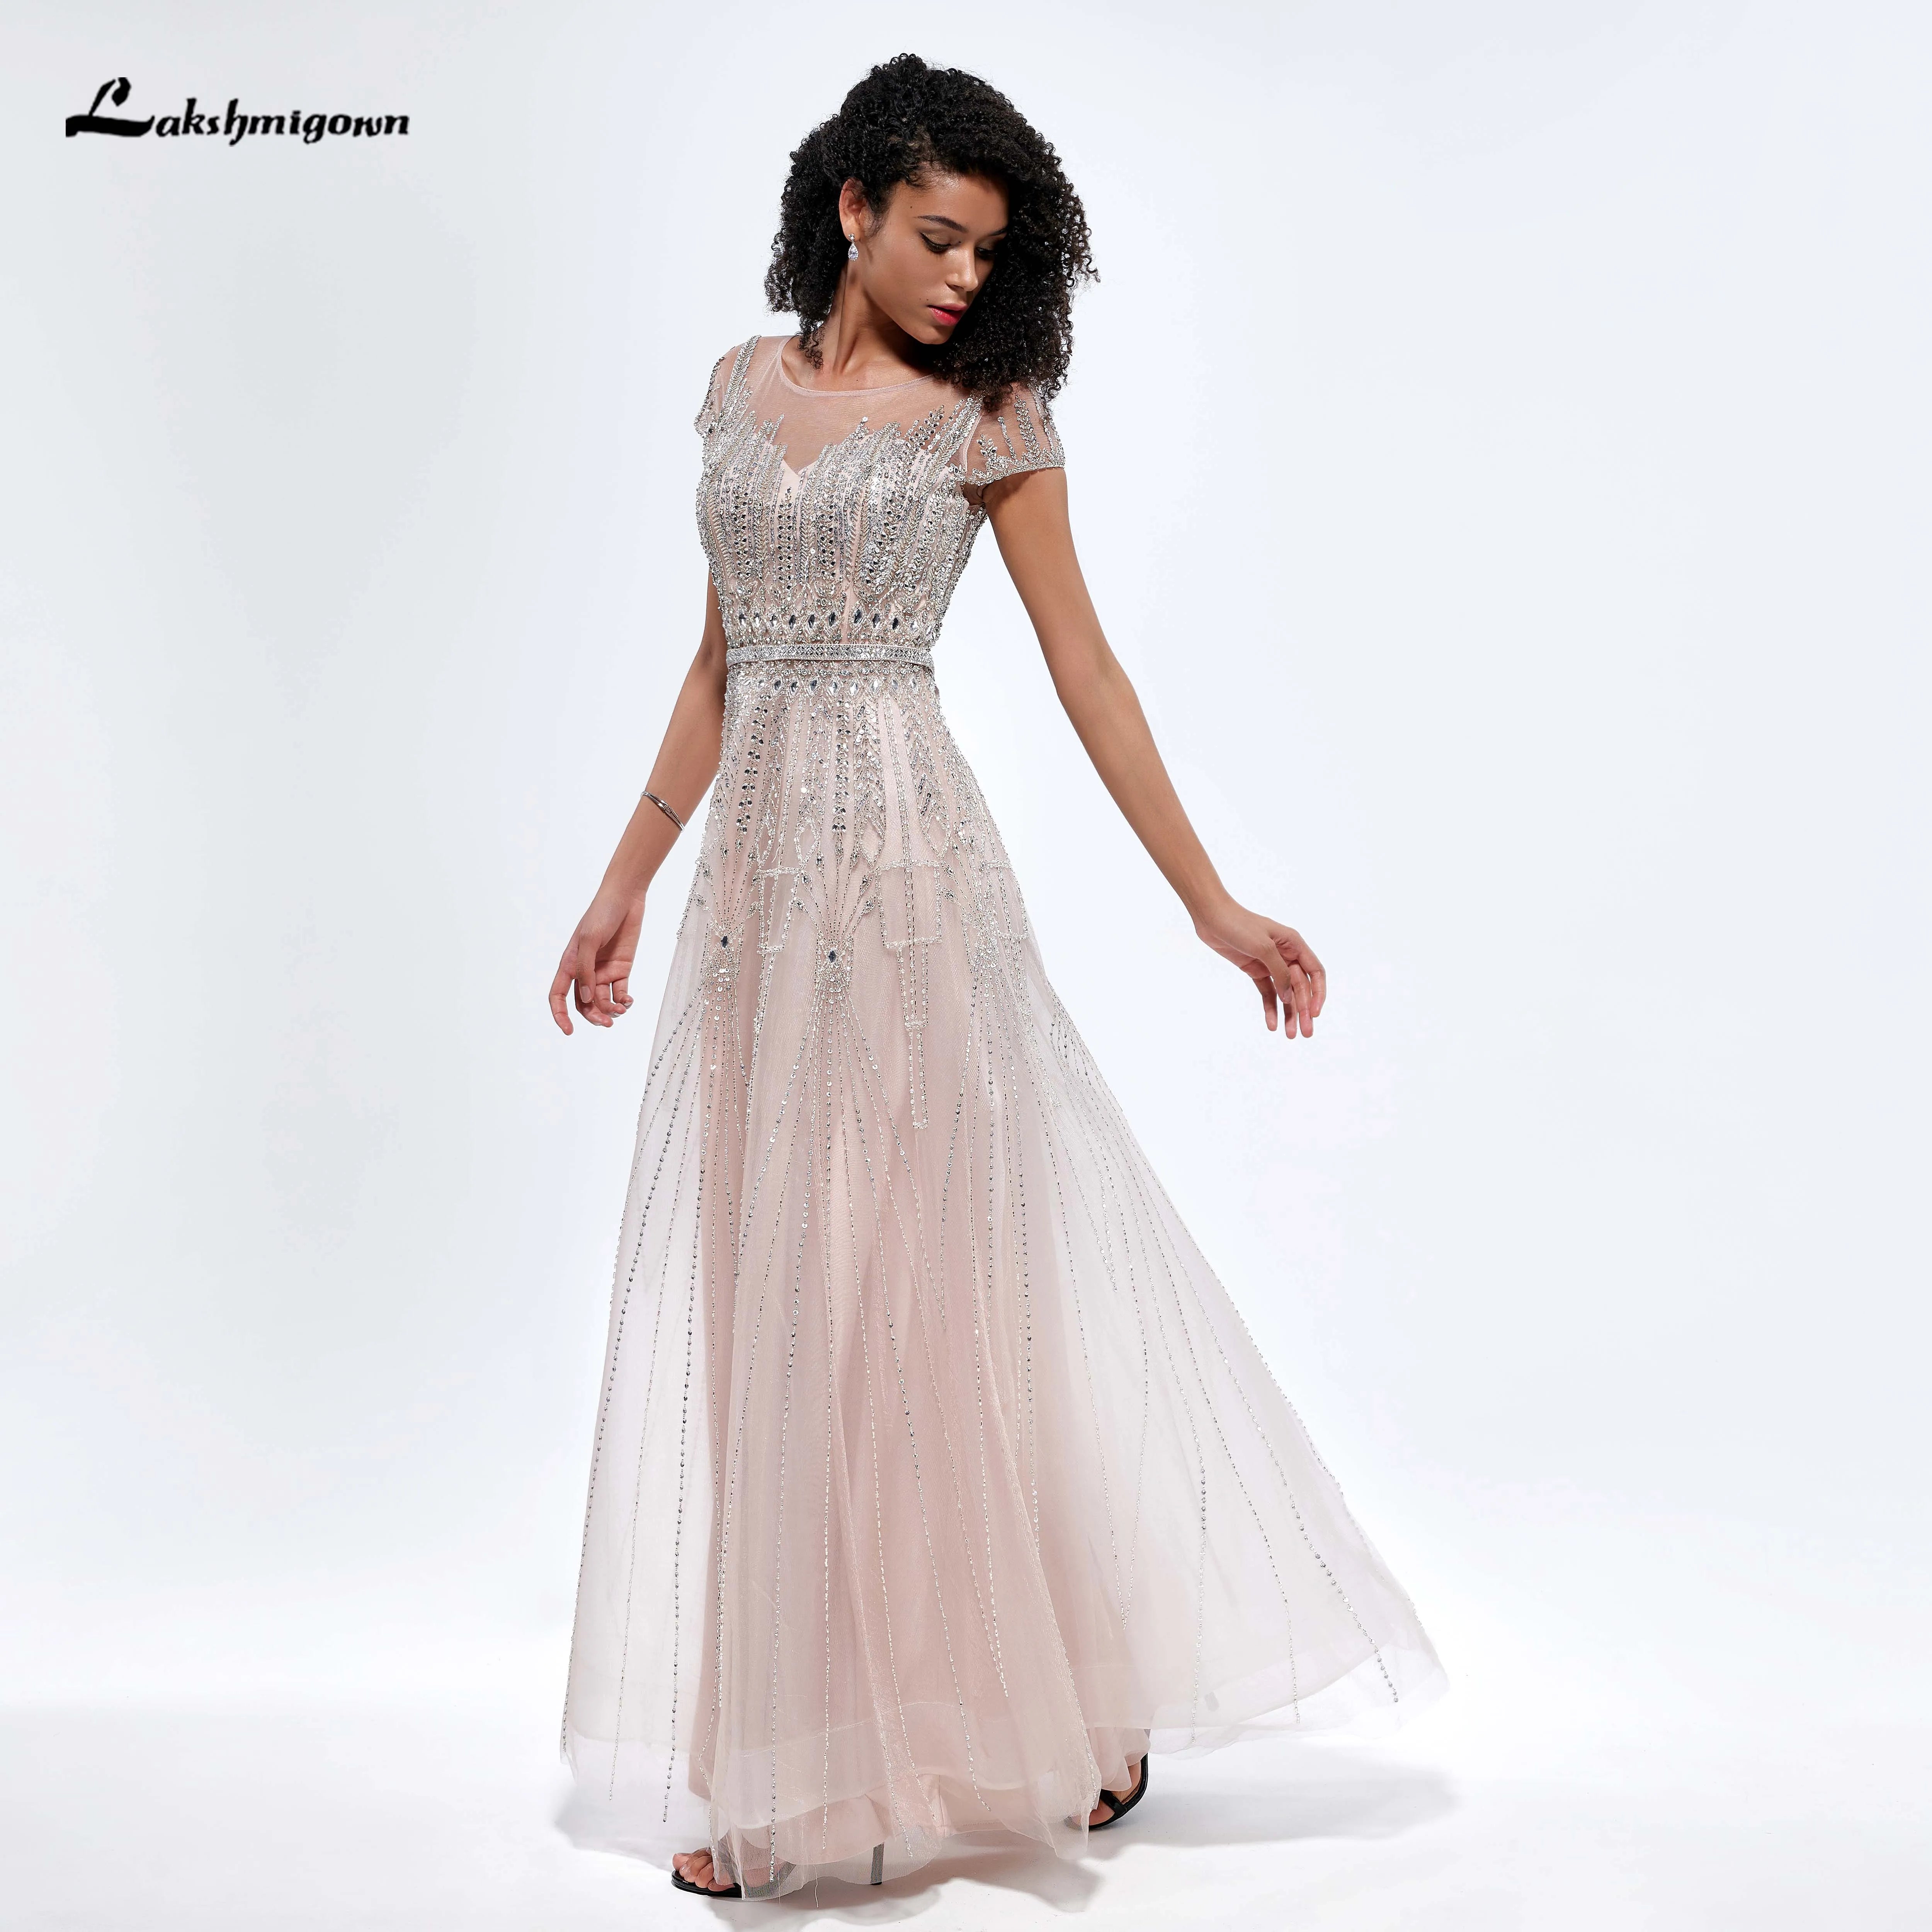 Lakshmigown Exquisite O Neck Short Cap Sleeve Beading A Line Evening Prom Dress For Women vestido para mujer elegantes y bonitos